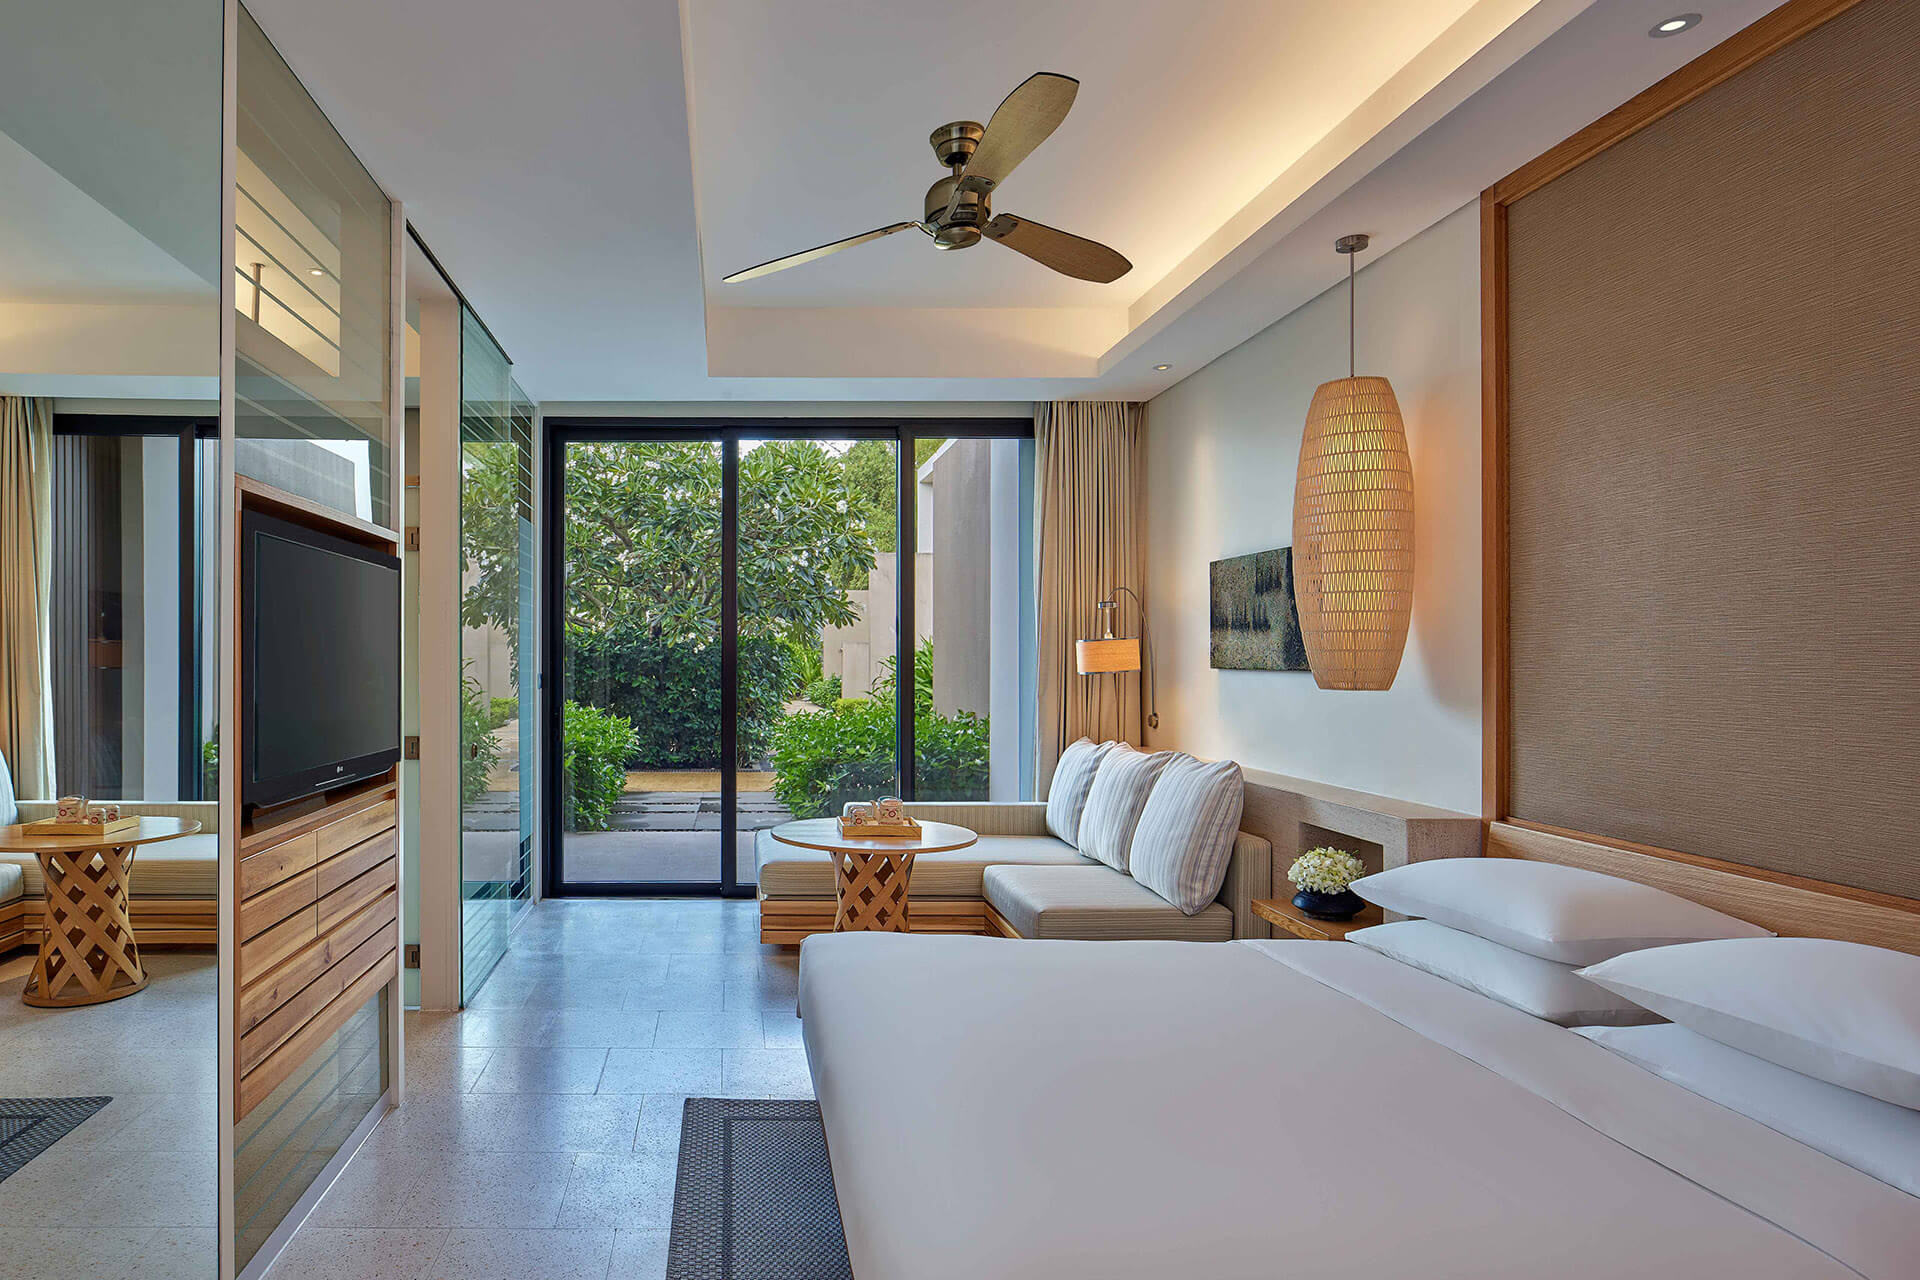 1 King Bed Room Hyatt Rengency Danang Resort And Spa Danang Fantasticity 5 Truong Sa Hoa Hai Ward Danang City Vietnam